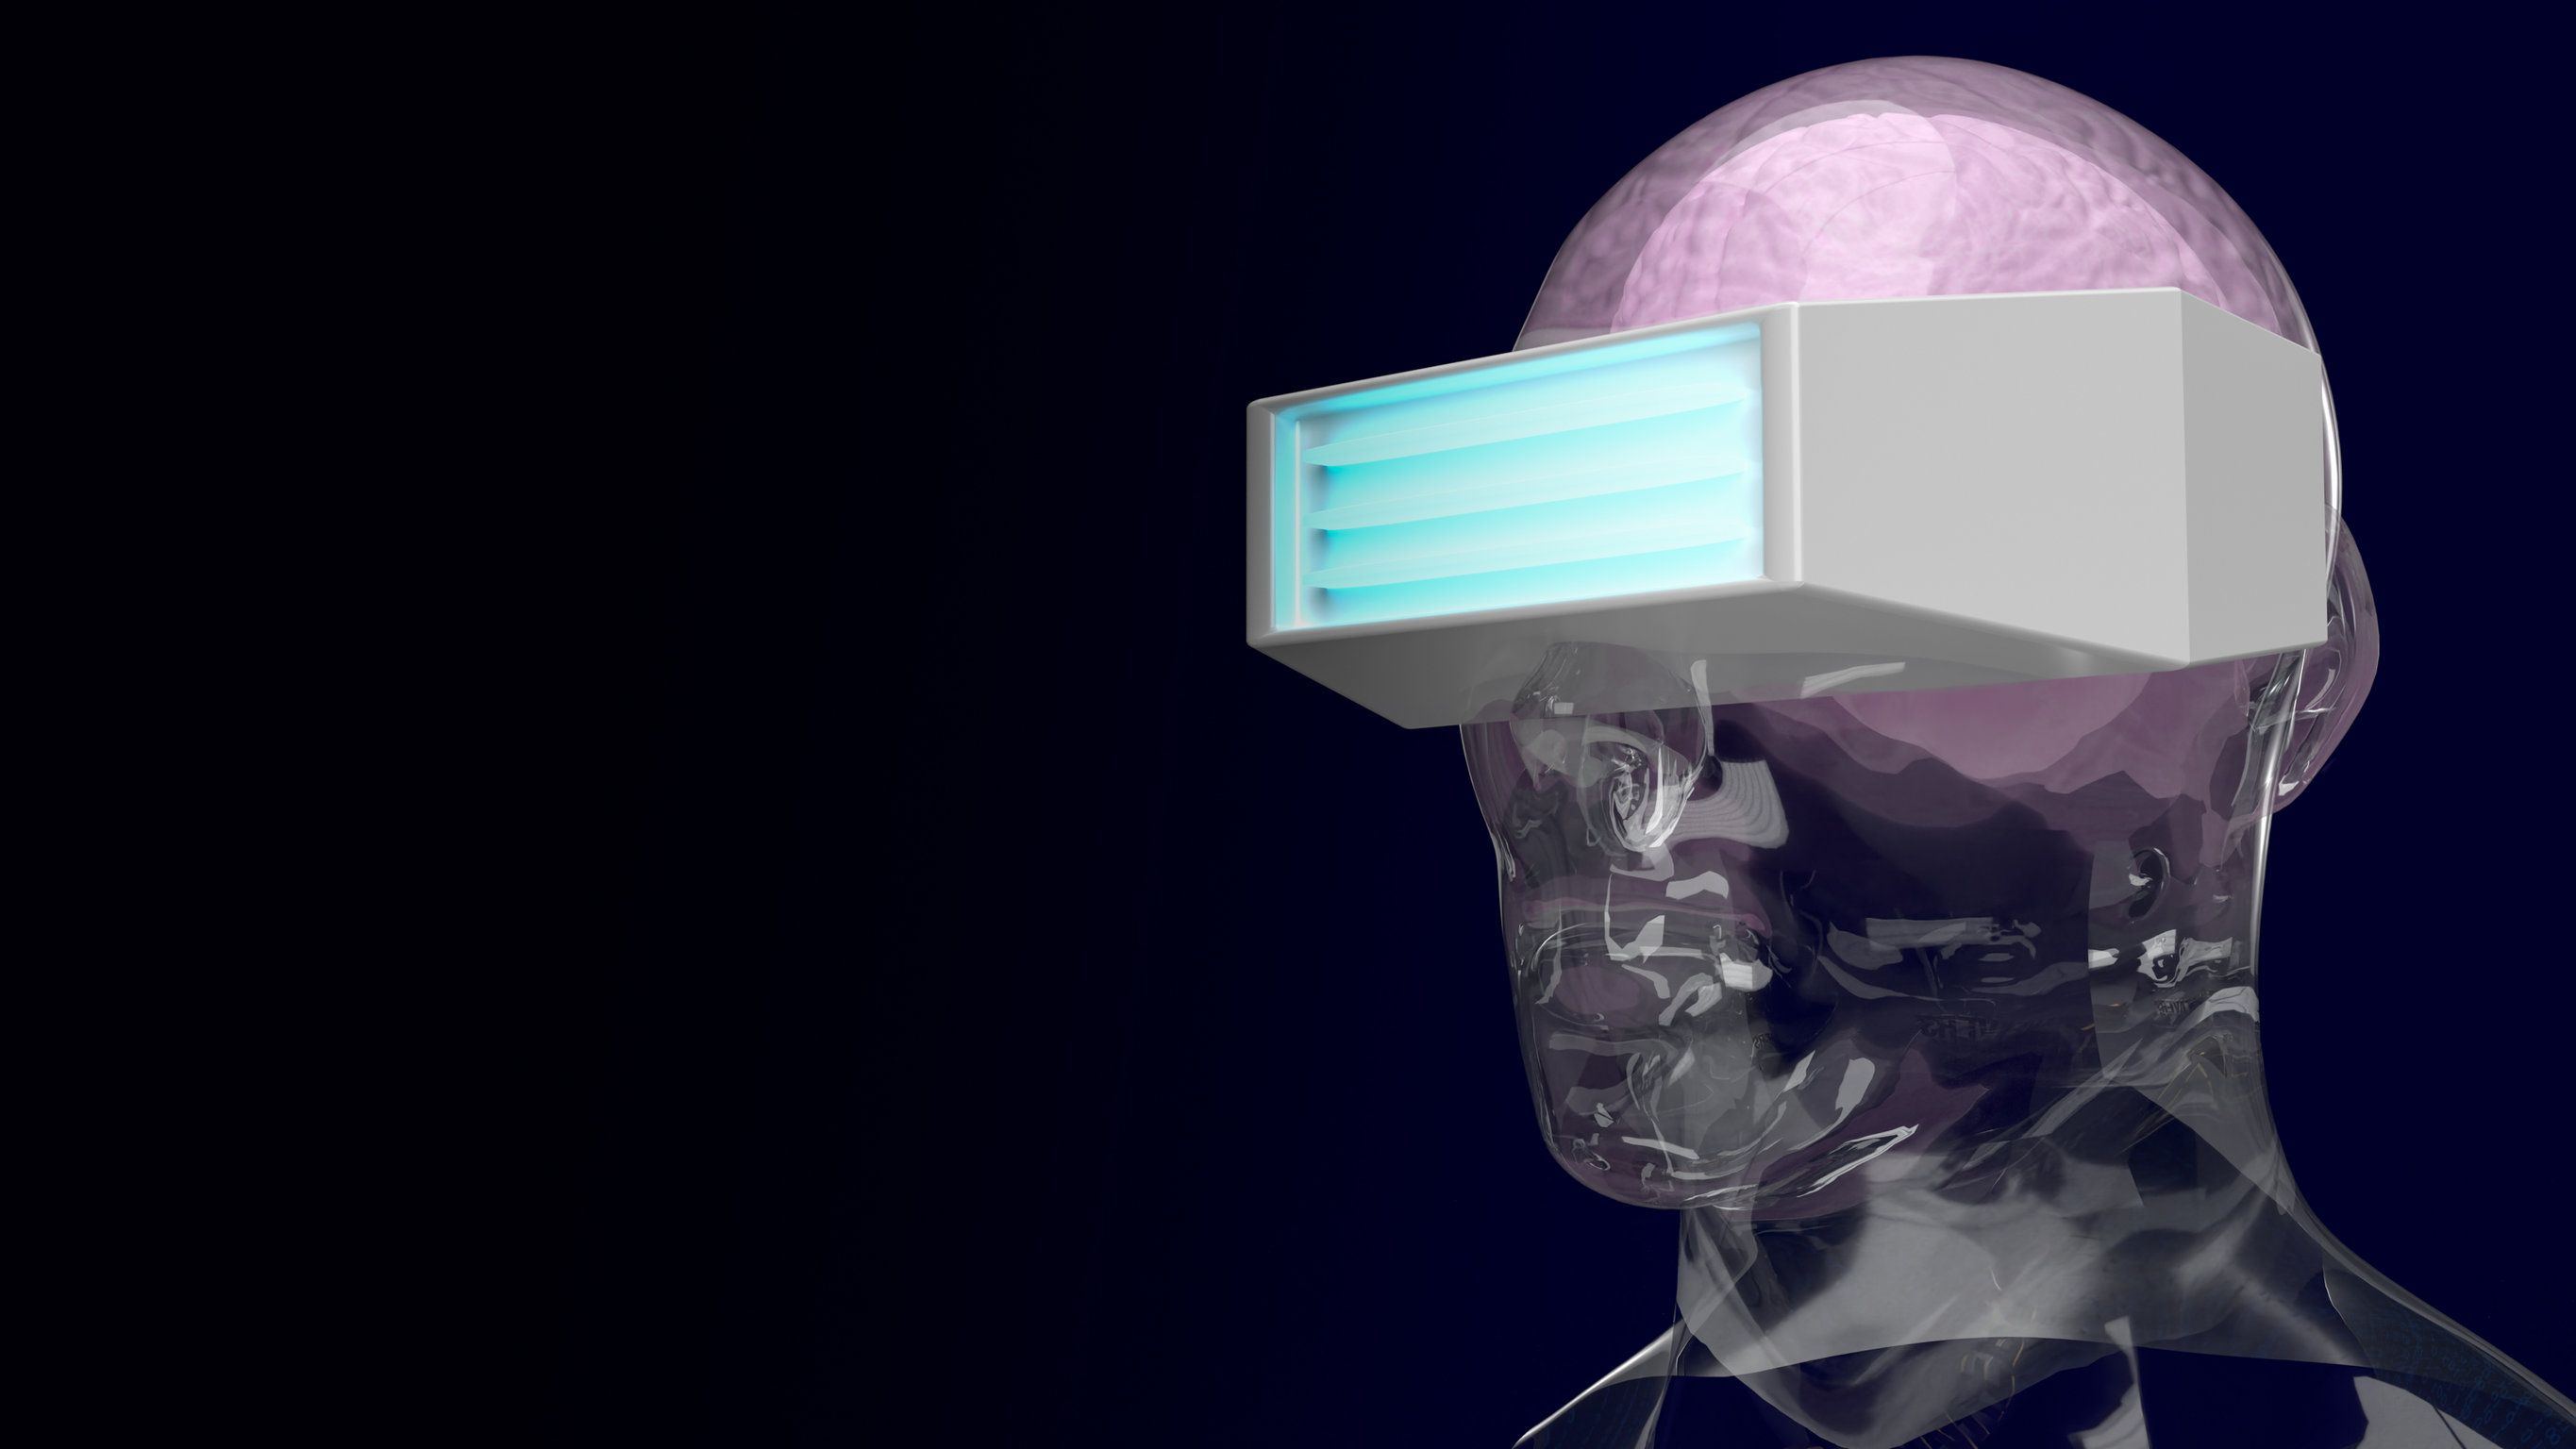 eMacula, la revolución de la Realidad aumentada y la Realidad virtual  (AR/VR) - Asociación Mácula Retina